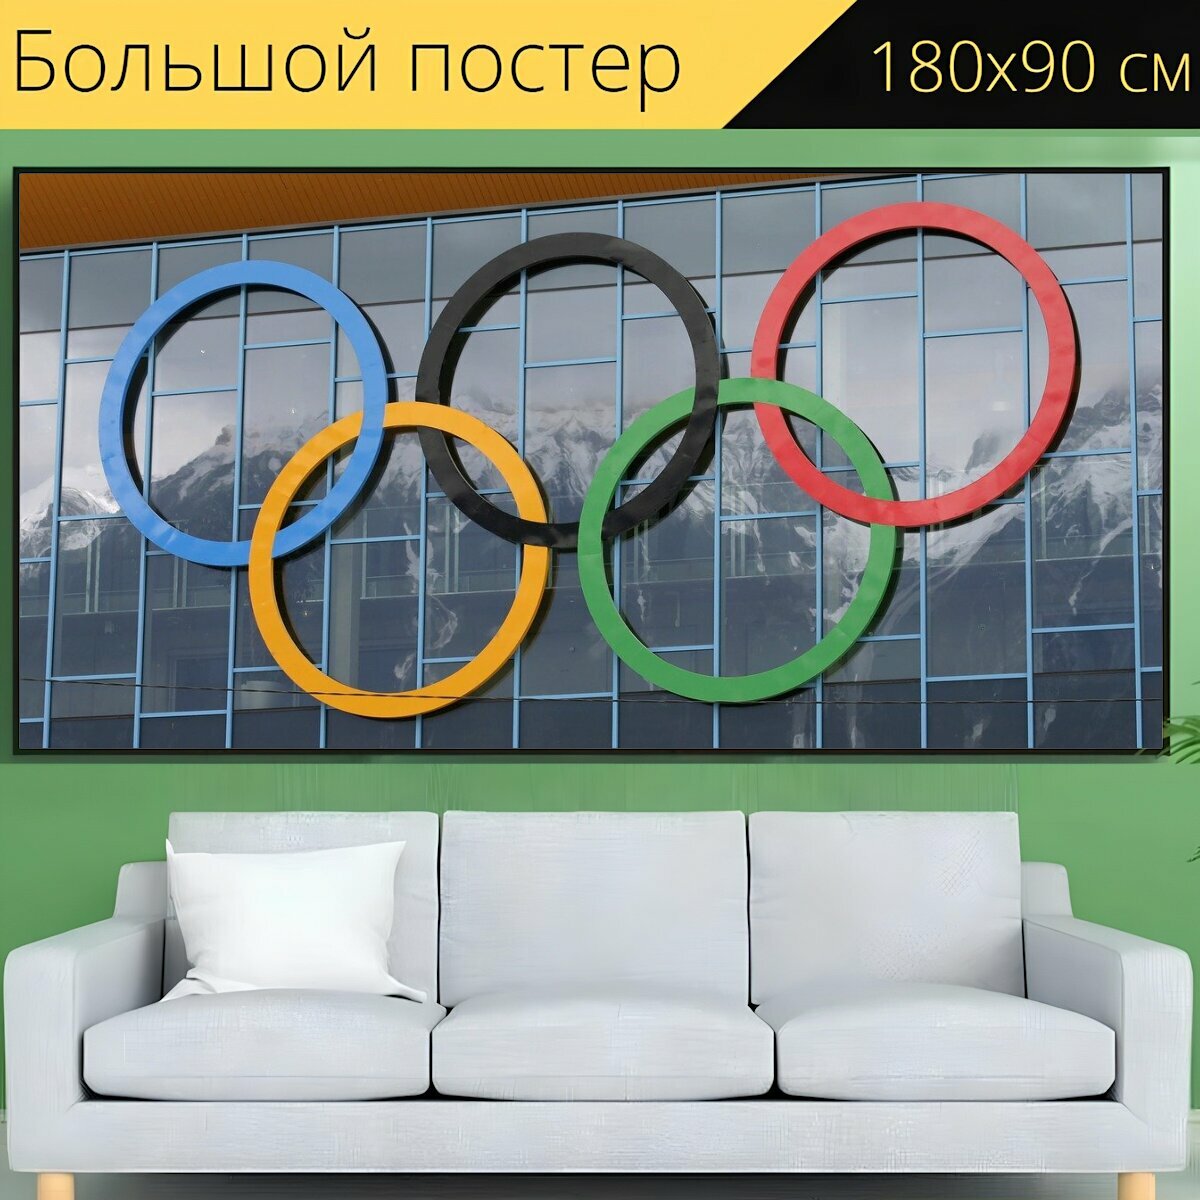 Большой постер "Олимпийские кольца, олимпиада, кольца" 180 x 90 см. для интерьера